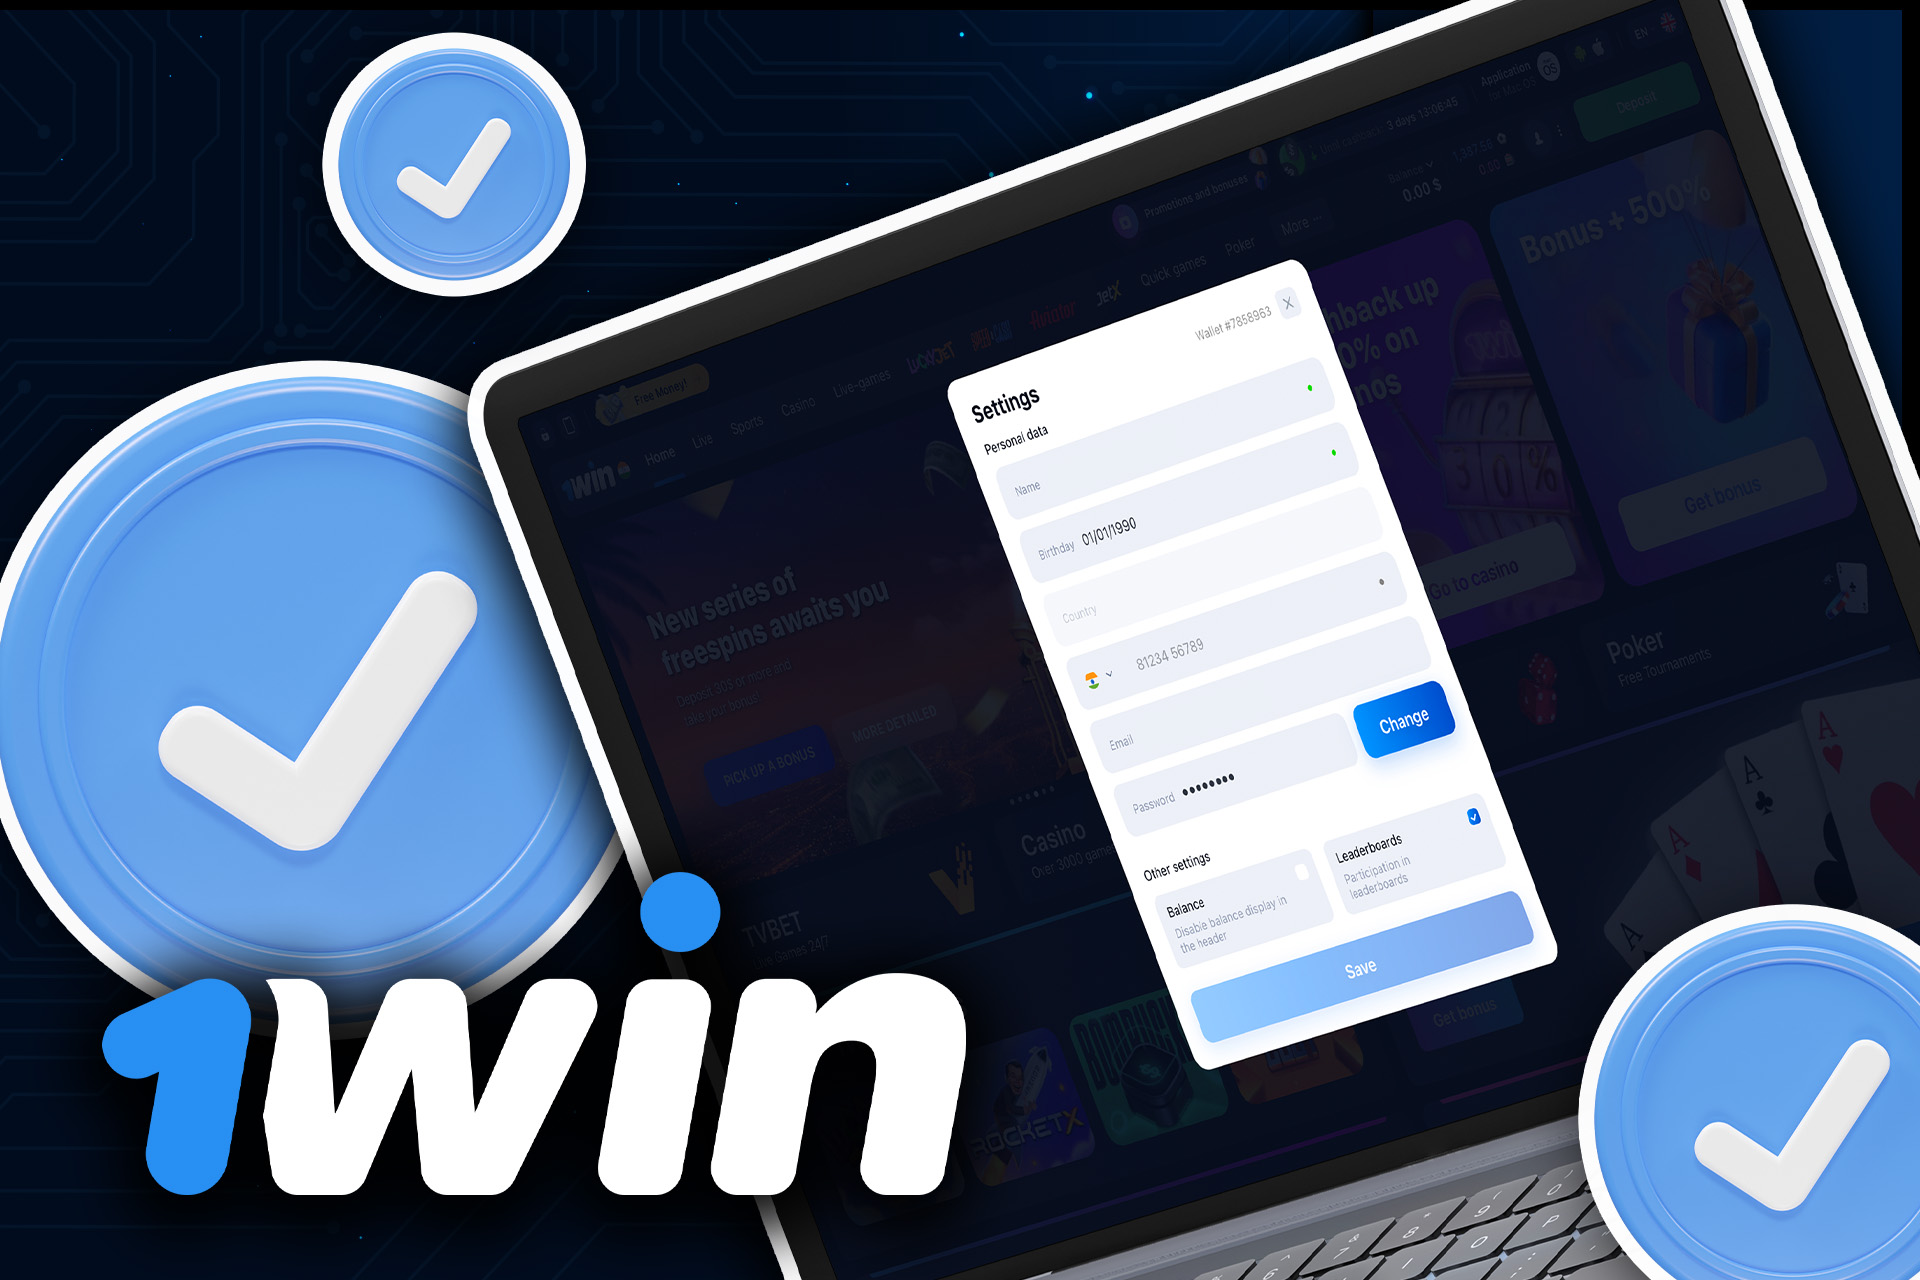 Cada usuario de 1win debe verificar su cuenta para poder realizar apuestas y jugar al casino sin límites.